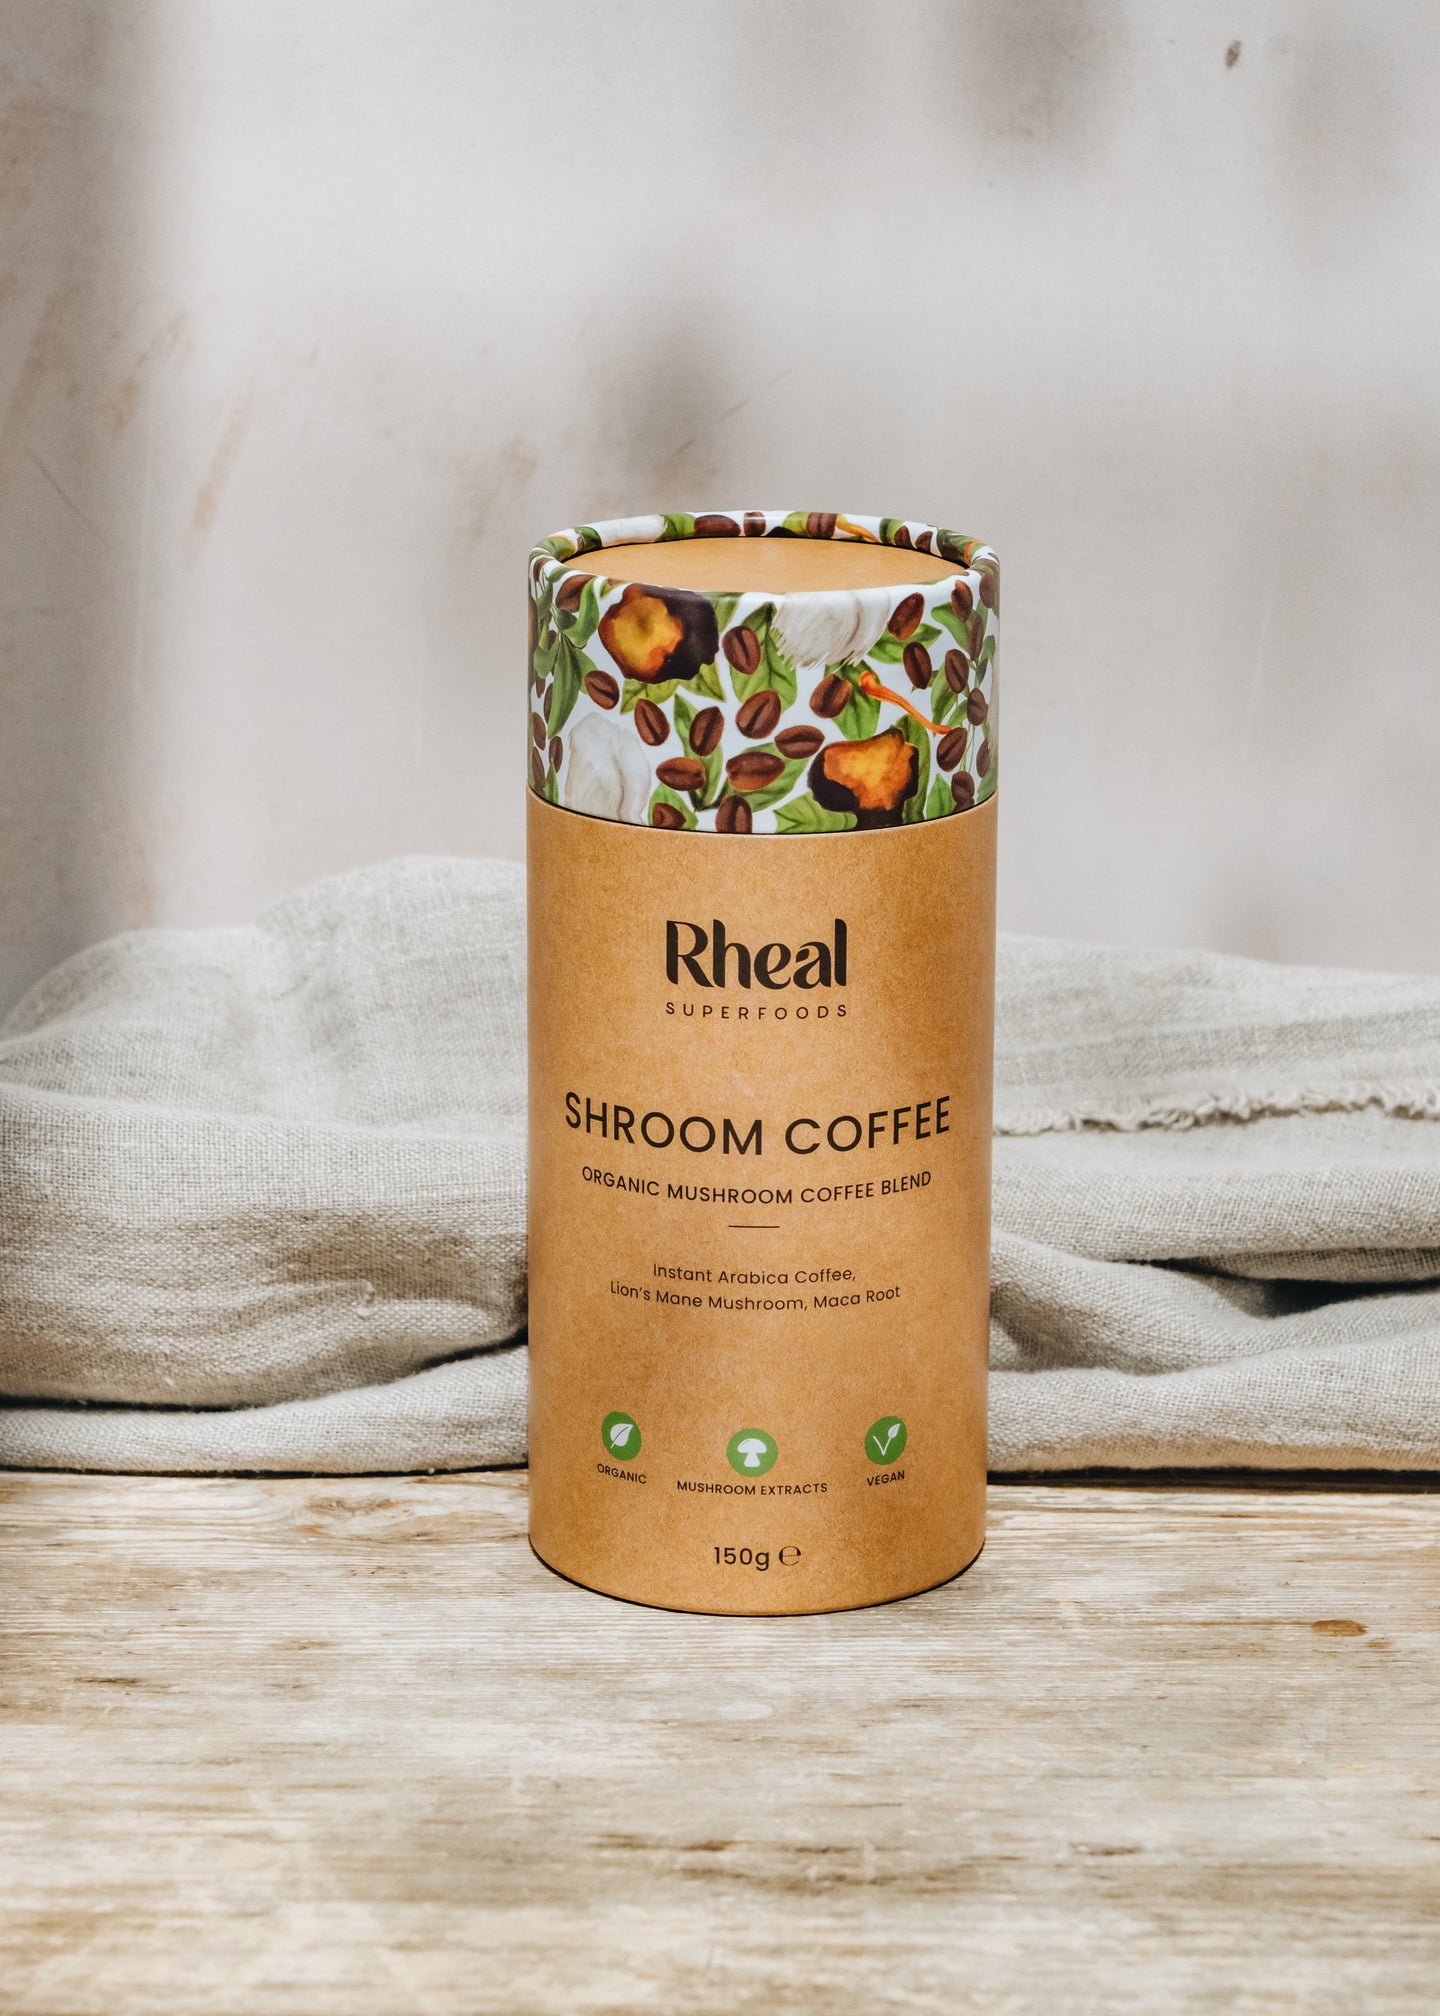 Shroom Coffee